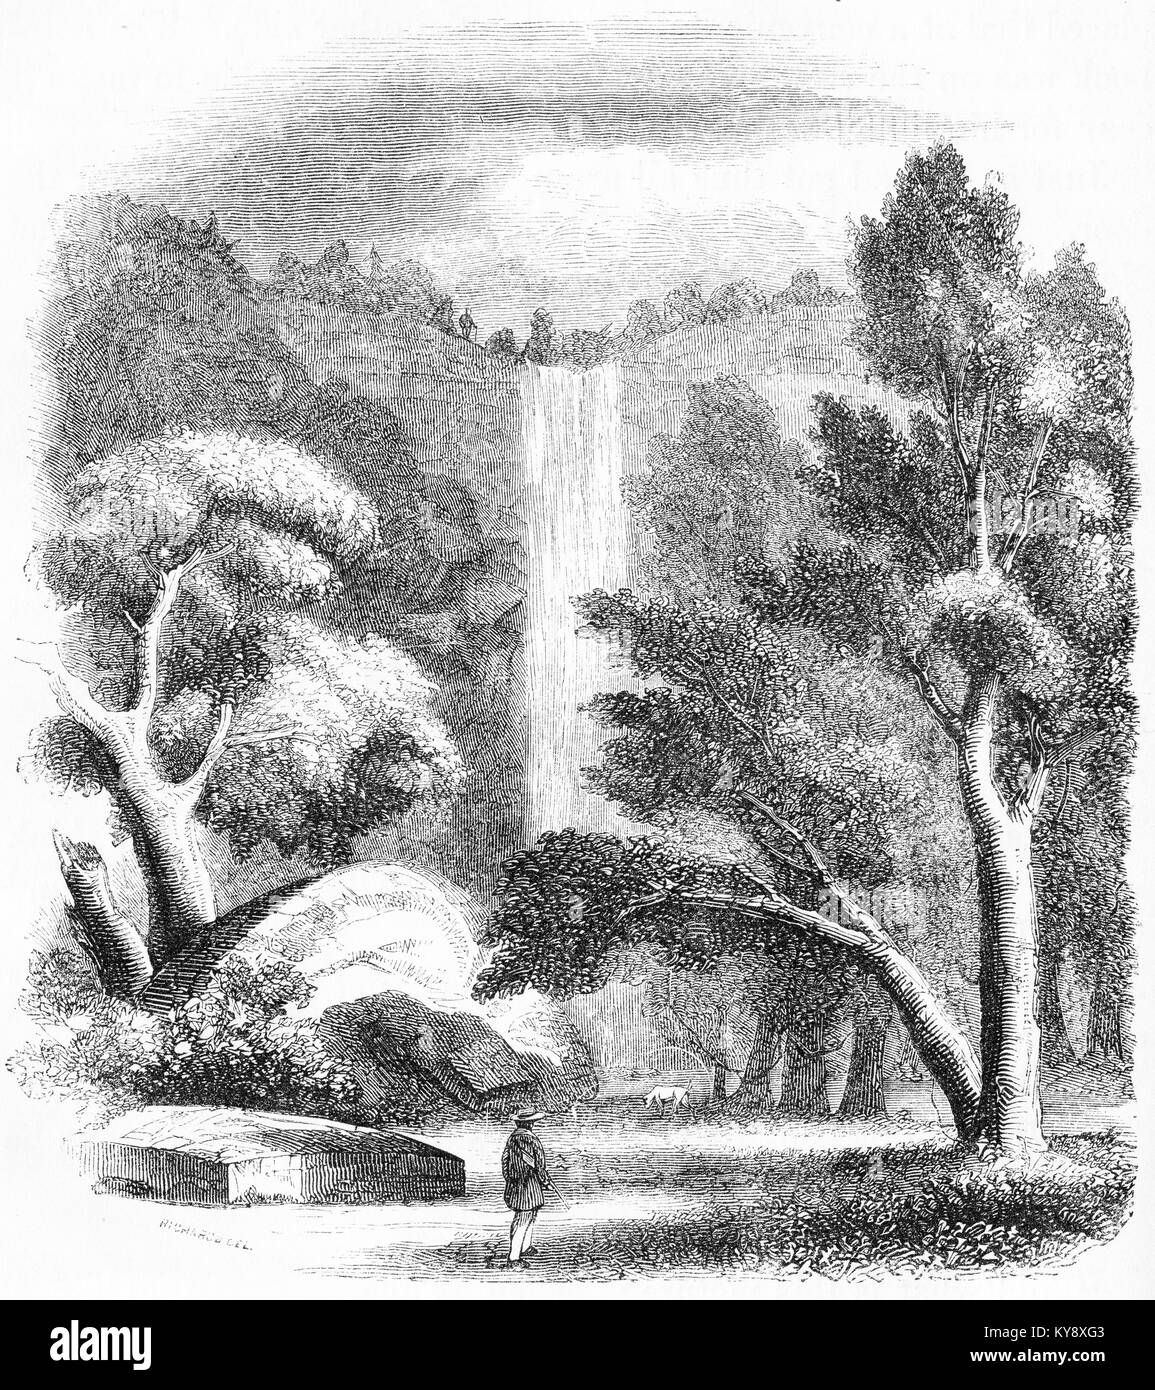 Grabado de una gran cascada. A partir de un original grabado en la Harper's libros de cuentos por Jacob Abbott, 1854. Foto de stock